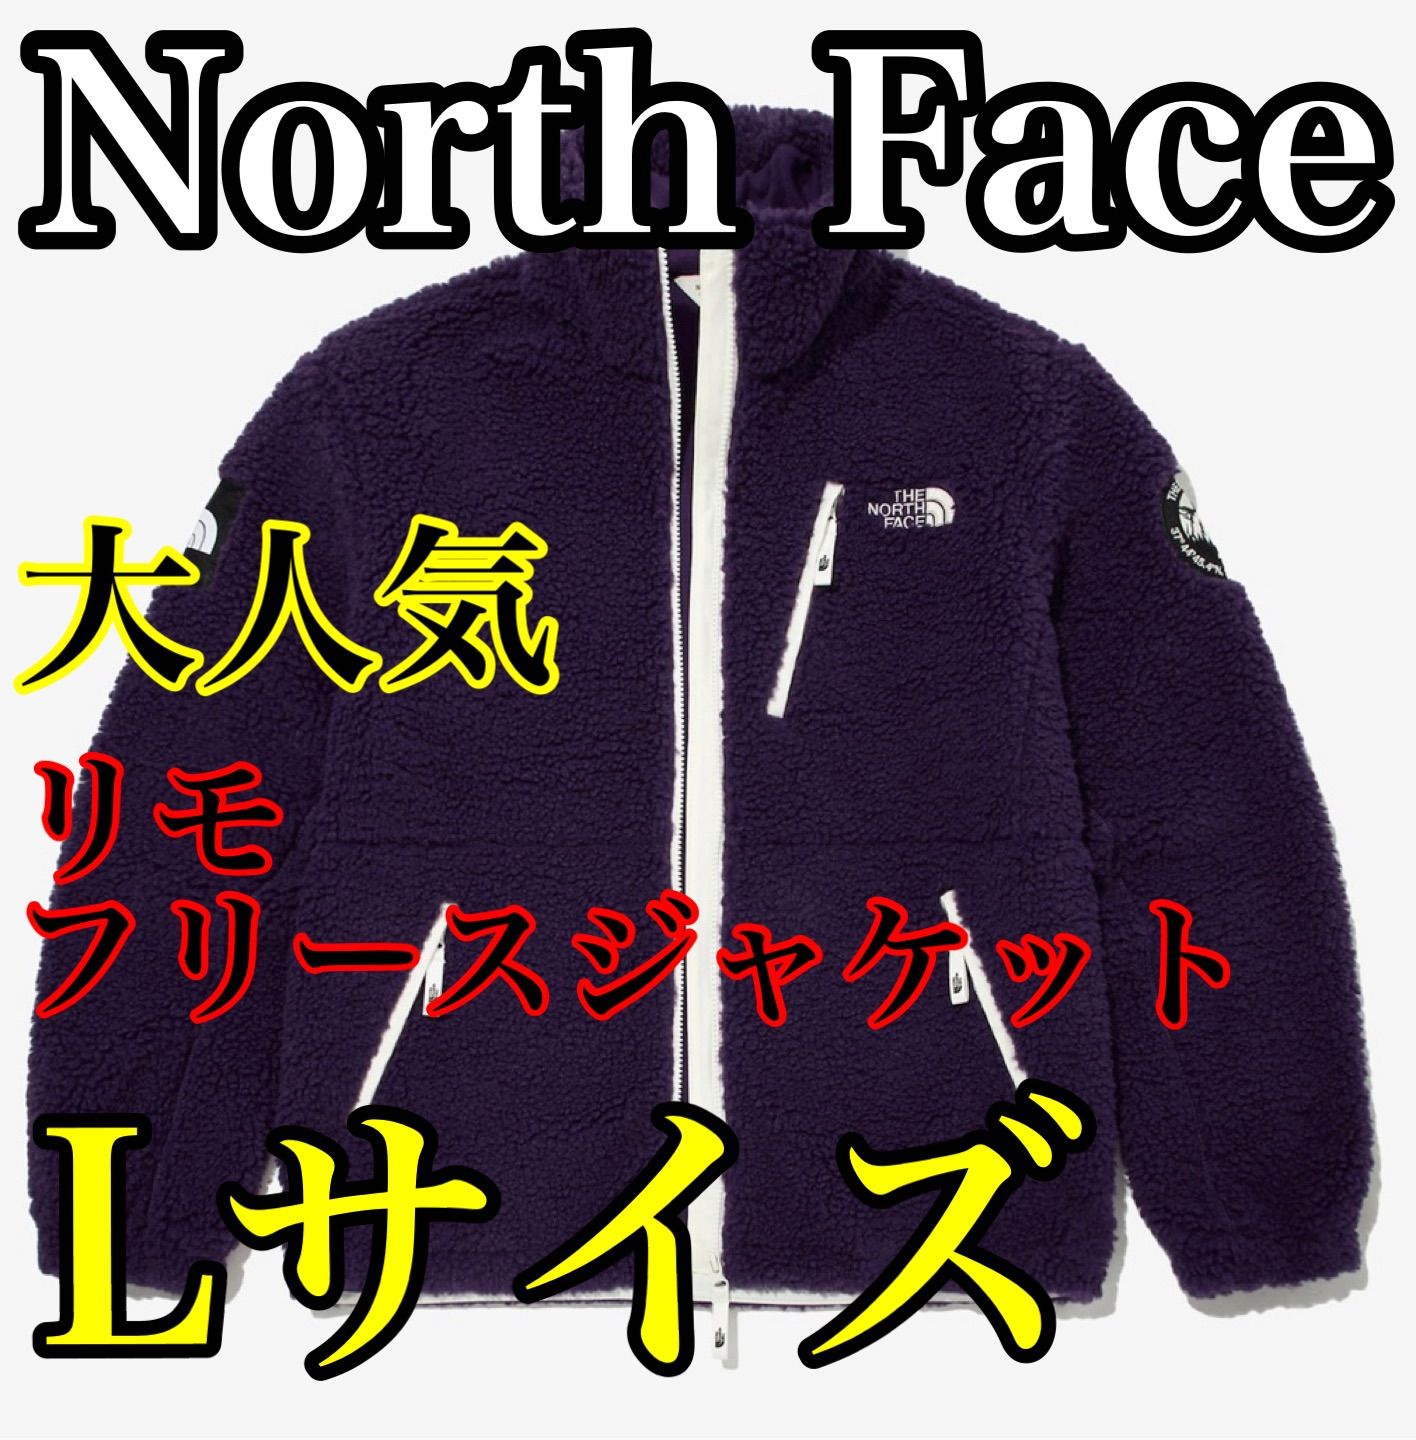 North Face リモフリースジャケット Lサイズ 珍しいパープル